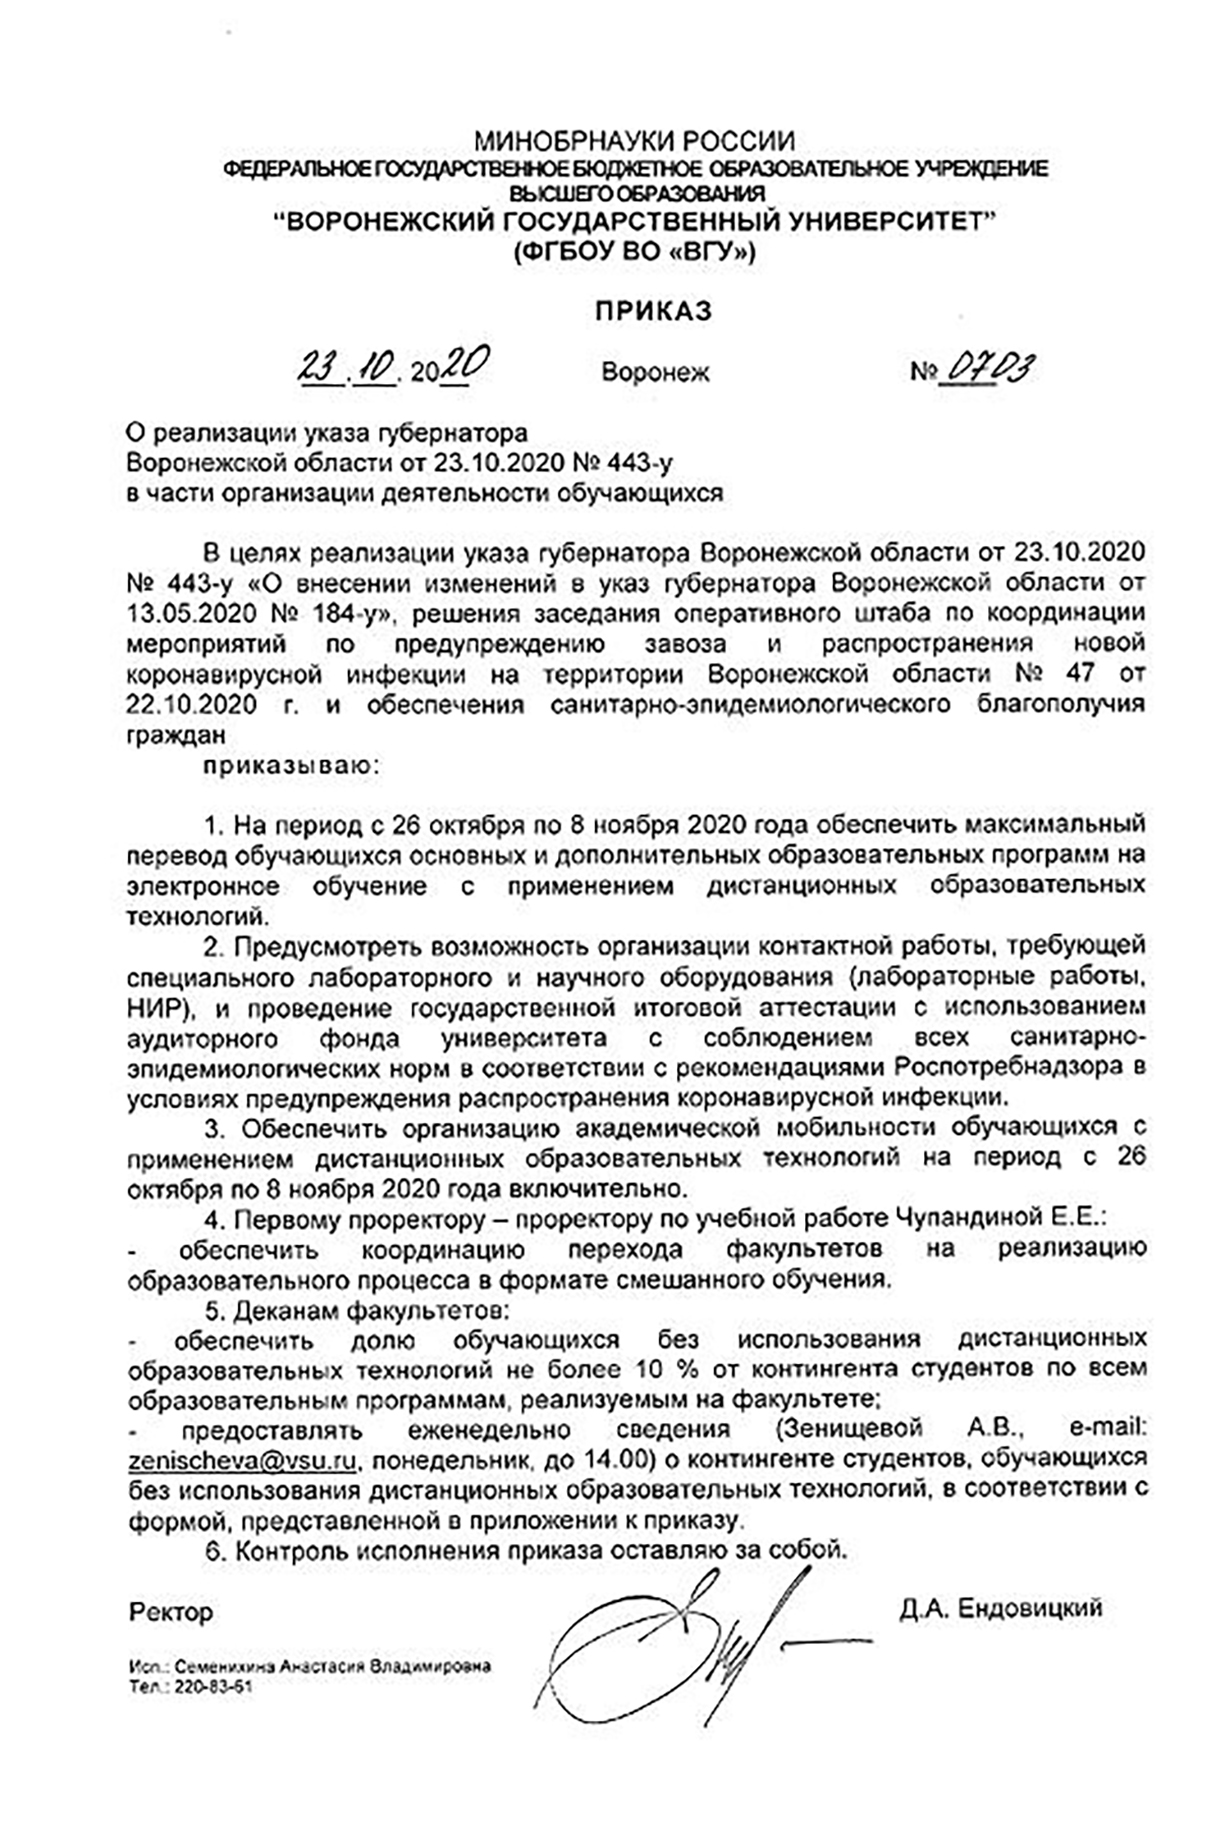 В Воронеже приказом ректора всех студентов ВГУ отправили на «дистанционку»